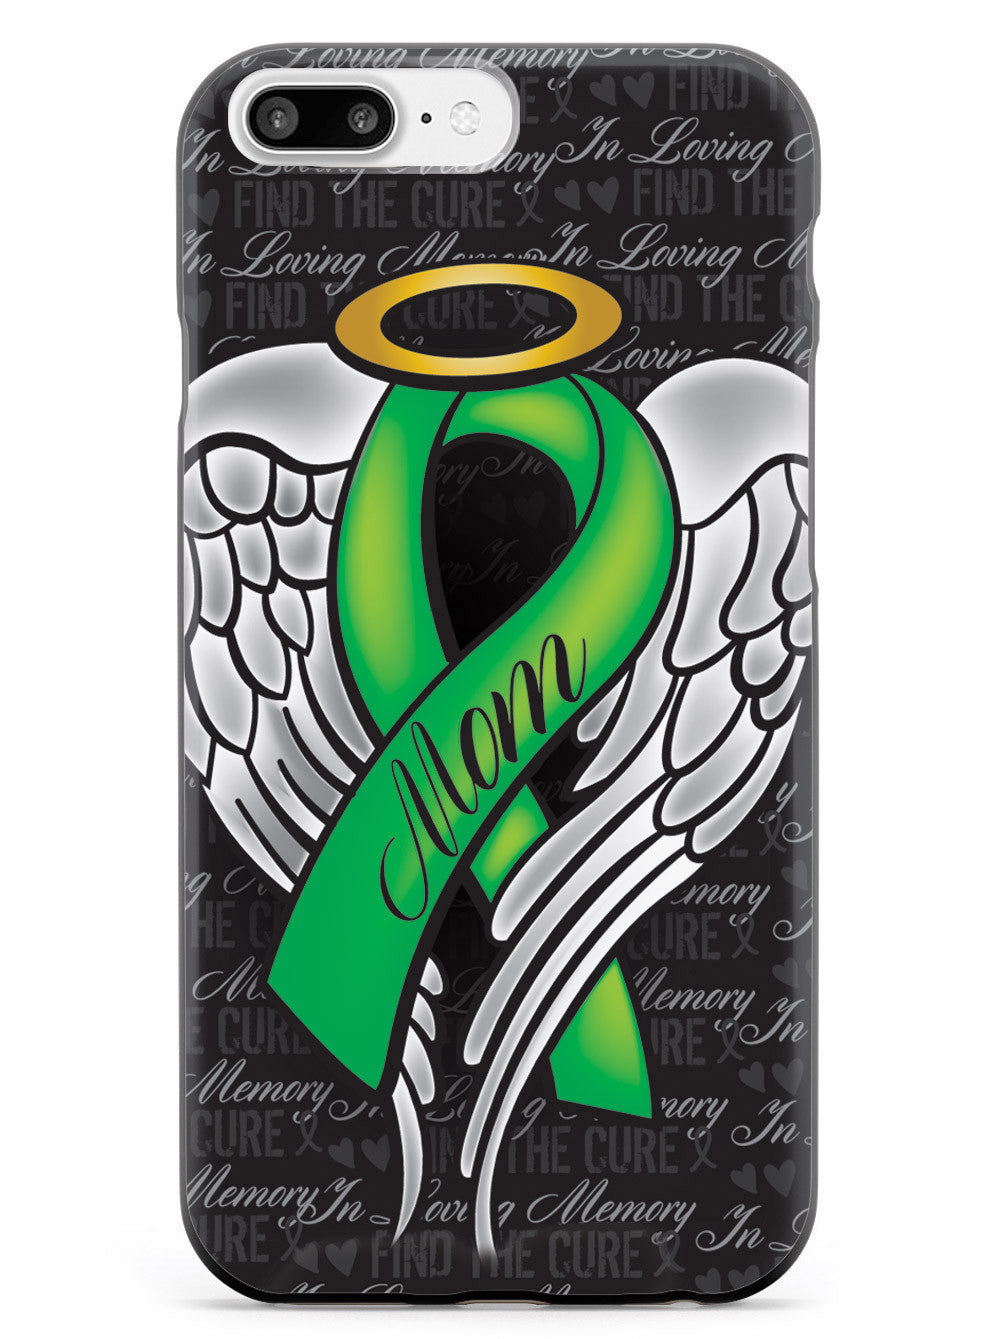 In Loving Memory of My Mom - Green Ribbon Case